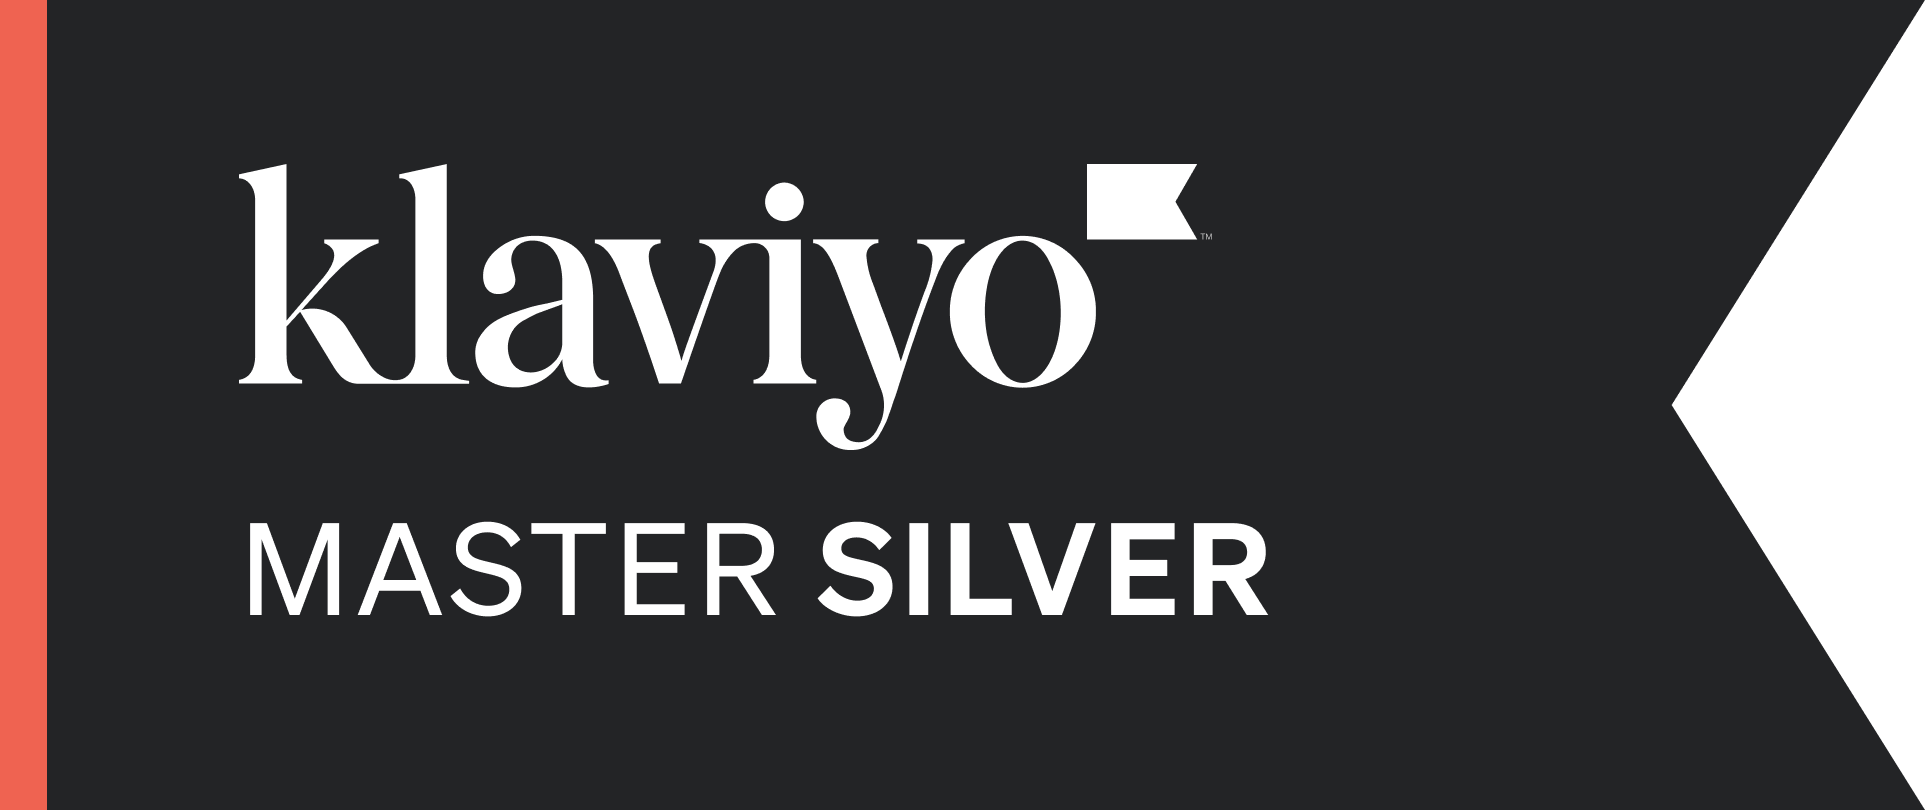 Klaviyo Master Silver Partner